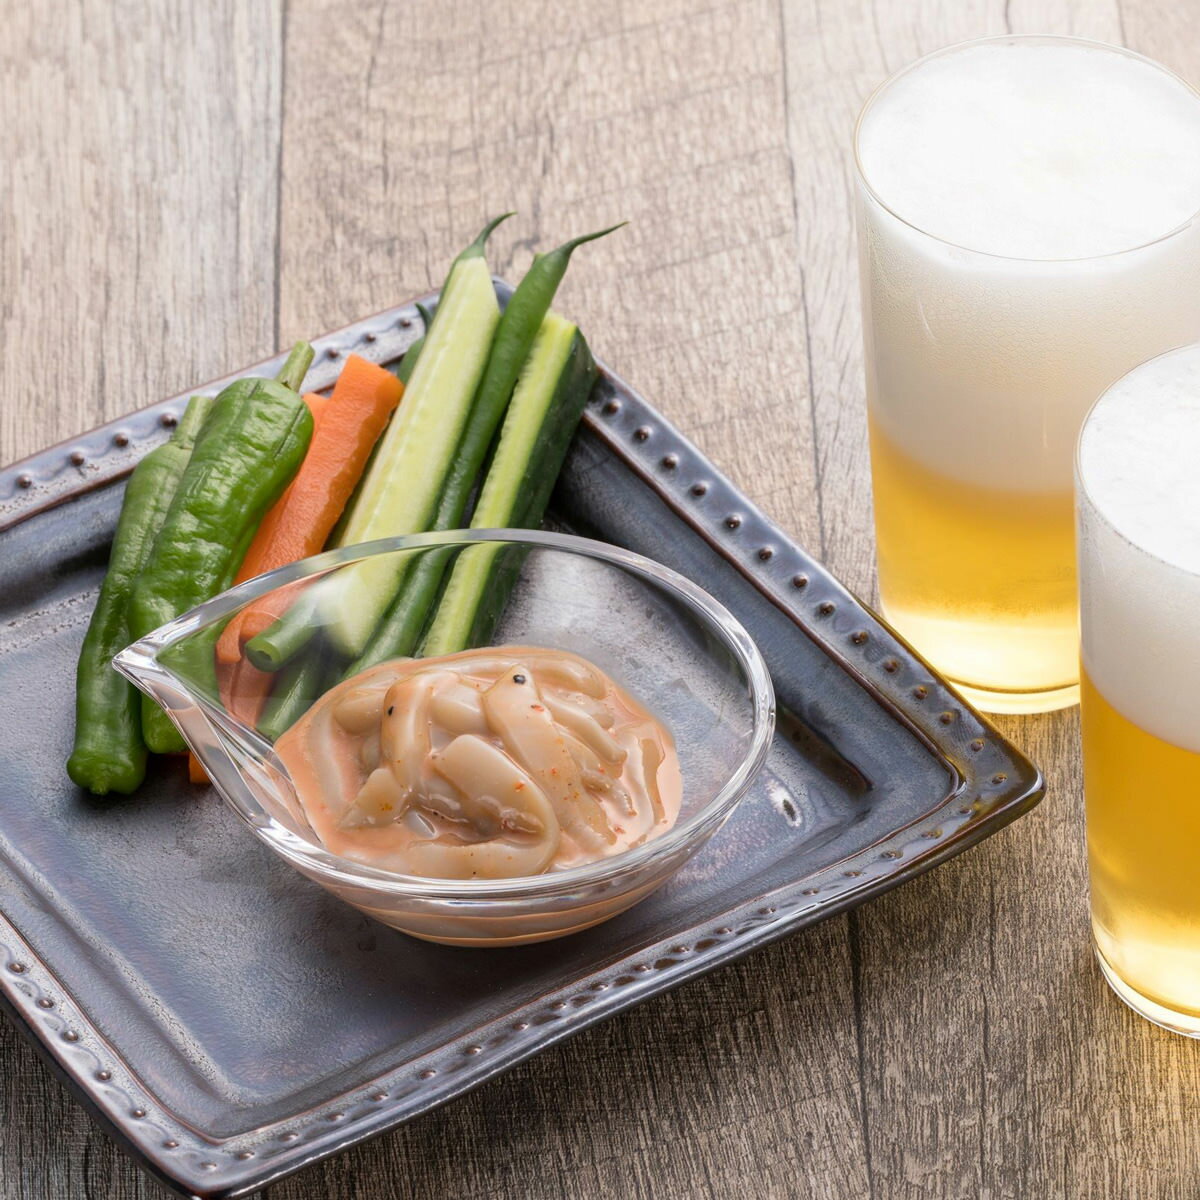 いか刺身専門店がつくった「ビールを楽しむいかの塩辛 減塩 プレミアムいか塩辛 ブラック 3個セット」です。丁寧に皮をむいて正肉のみで仕上げています。ブラック、レッドペッパーなどの辛さがビールによく合います。ステック野菜などのおつまみのトッピングにもおすすめです。減塩にこだわり、日本食品標準成分表2015年版(七訂)記載「塩辛」と比較して65％塩分をカットしました。化学調味料、増粘多糖類、着色料などの添加物を一切使用していない無添加食品です。新鮮素材で鮮度管理されたいかは、肝も生で食べられる鮮度レベルで、生臭みやえぐみが全くなくいかの身と肝のおいしさを感じていただけます。食べきりサイズの小分けパックです。ご飯のお供に、お酒のおつまみにもおすすめです。とろりとした滑らかな口当たりがあらゆる日本酒に良く合います。【名称】いかの塩辛【数量・内容】70g×3【賞味期間】製造日より18か月【原材料】するめいか(国産)、いか肝、食塩、醤油、植物油、香辛料、(一部に小麦・いか・大豆を含む)【仕様】掲載商品には、アレルギーの原因といわれる原材料を含んでいる場合がございます。 くわしくはお問い合わせフォームにてご連絡ください。類似商品はこちら減塩 プレミアムいか塩辛 ホワイト 3個セット3,168円減塩 プレミアムいか塩辛 グリーン 3個セット3,168円減塩 プレミアムいか塩辛 食べくらべセット 33,168円減塩 プレミアムいか塩辛 レッド 3個セット 3,168円減塩 プレミアムいか塩辛 ブラック イカ 冷凍2,497円減塩 プレミアムいか塩辛 ブラック 2個 イカ3,955円減塩 プレミアムいか塩辛 ホワイト イカ 冷凍2,497円減塩 プレミアムいか塩辛 レッド イカ 冷凍 2,497円減塩 プレミアムいか塩辛 グリーン イカ 冷凍2,497円新着商品はこちら2024/5/29健康カレー 4食セット レトルトカレー 詰め合2,580円2024/5/29関西 銘店カレー 4食セット レトルトカレー 3,780円2024/5/29富士山カレー 4食セット レトルトカレー 詰め3,980円再販商品はこちら2024/6/6きりたんぽセット 薬膳鍋 鍋セット きりたんぽ9,072円2024/6/6送料無料 きりたんぽセット4～5人前 三四郎旅9,072円2024/6/6ひのき湯桶 10,010円